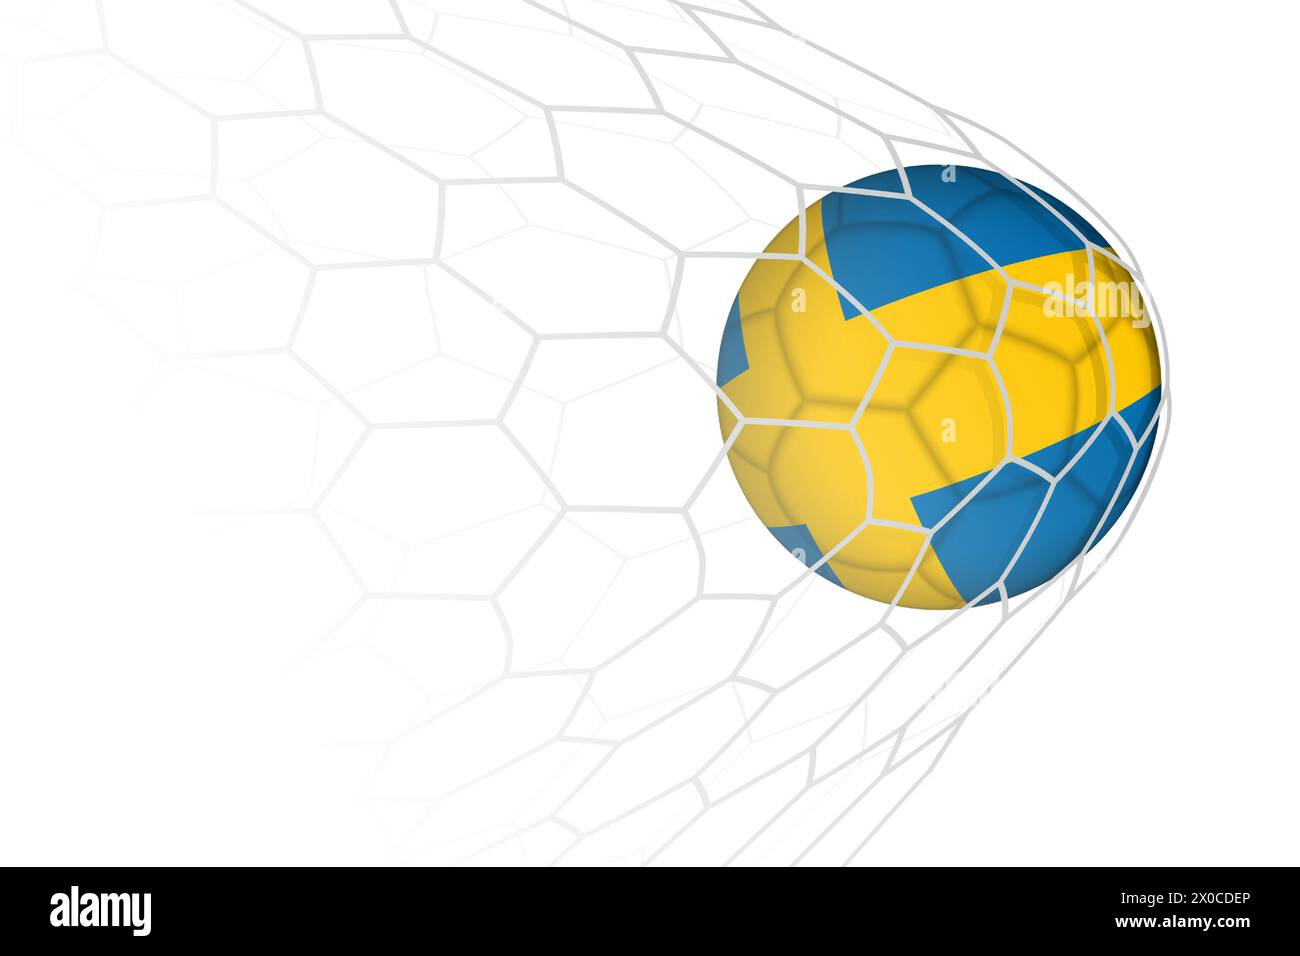 Sweden flag soccer ball in net. Vector sport illustration. Stock Vector